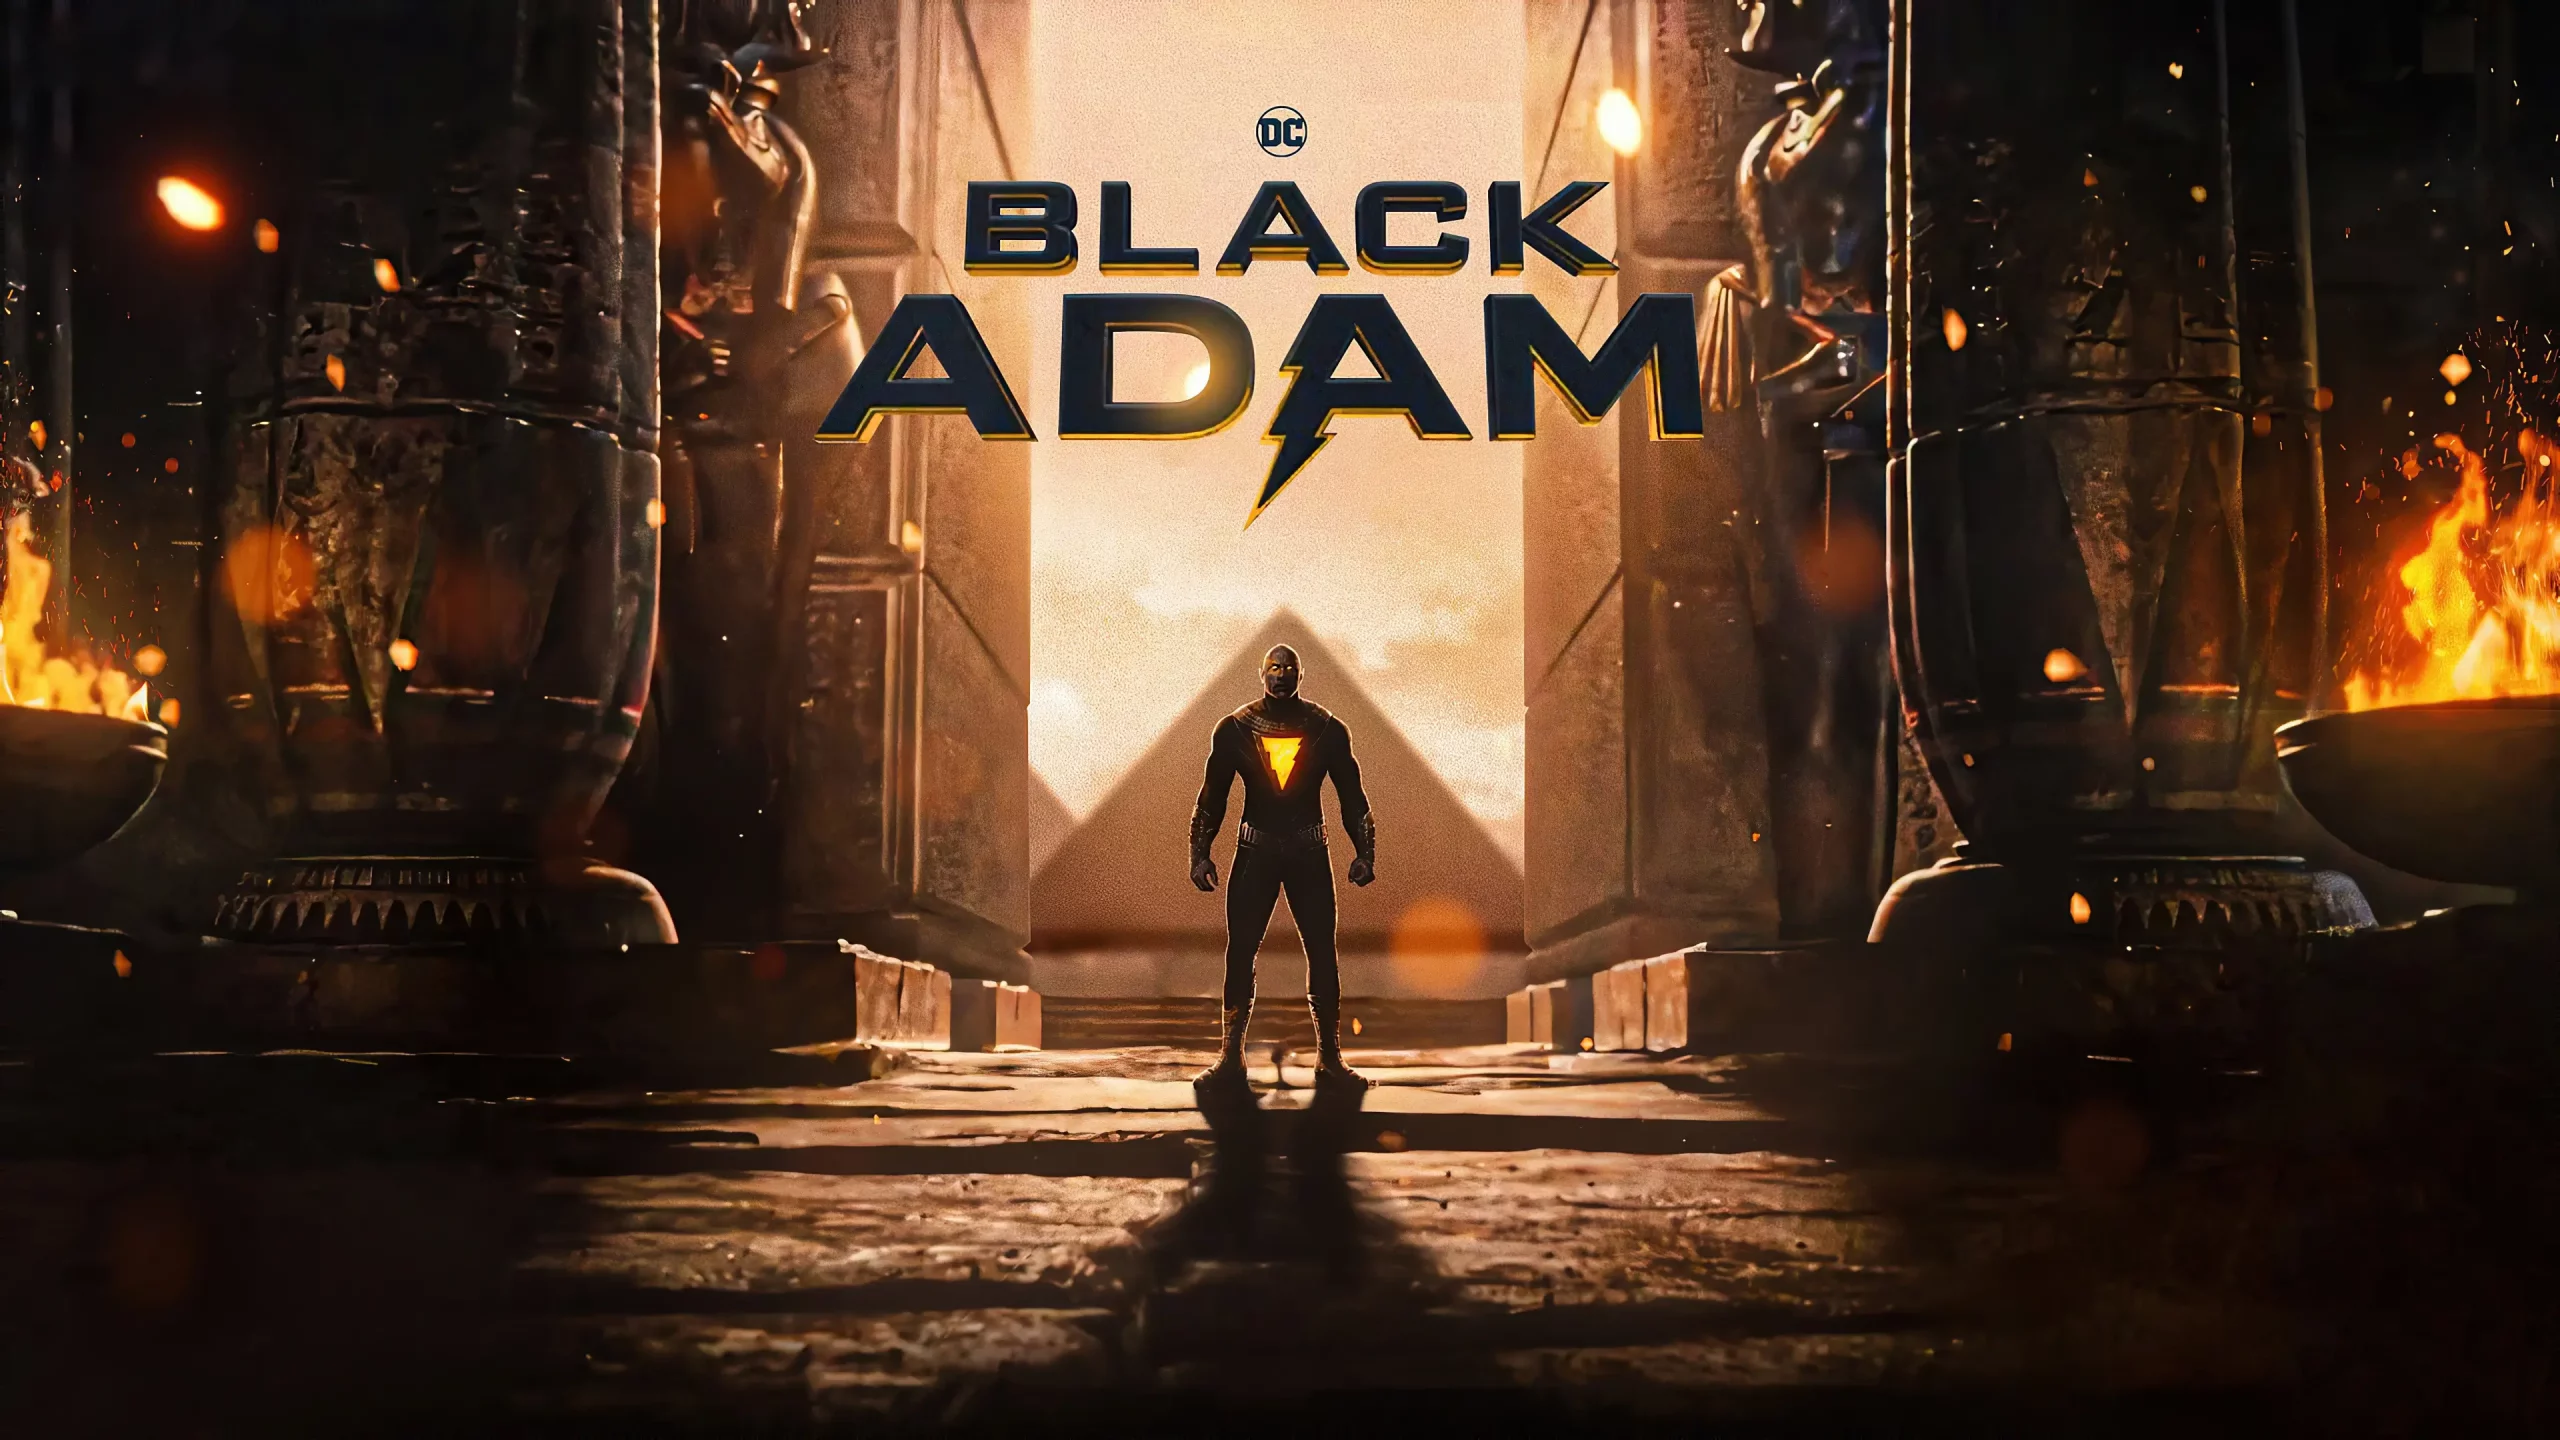 Movie Poster of Black Adam.